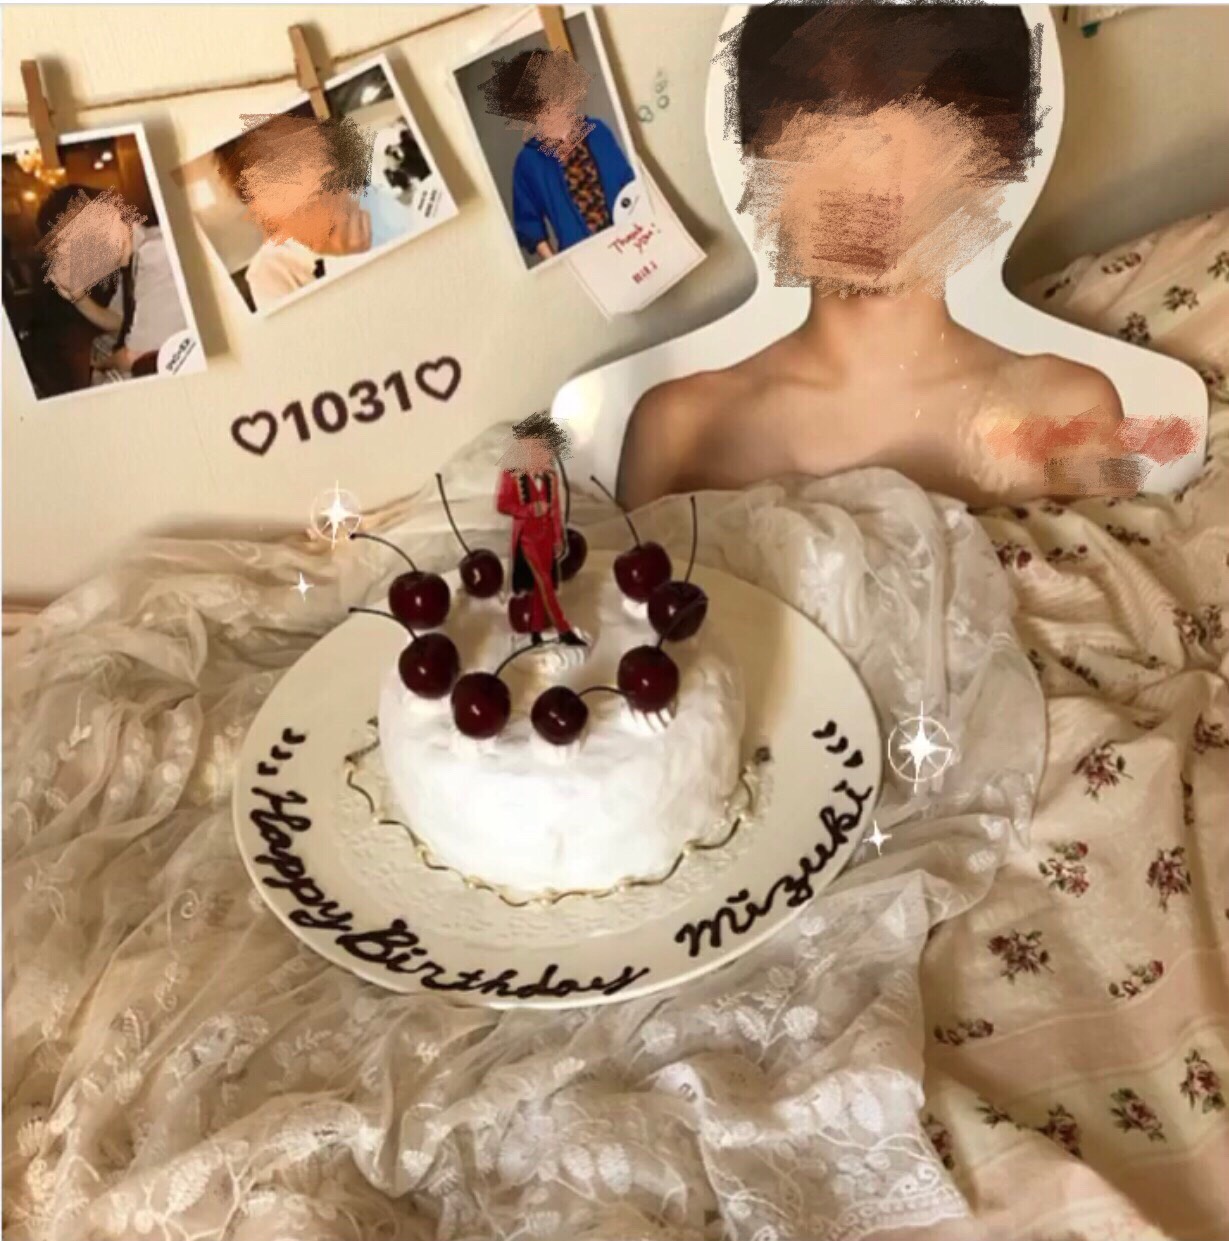 ヲタ活トレンドハッシュタグ 本人不在の誕生日会 でみつけた韓国風チェリーケーキがシンプルに可愛い ローリエプレス